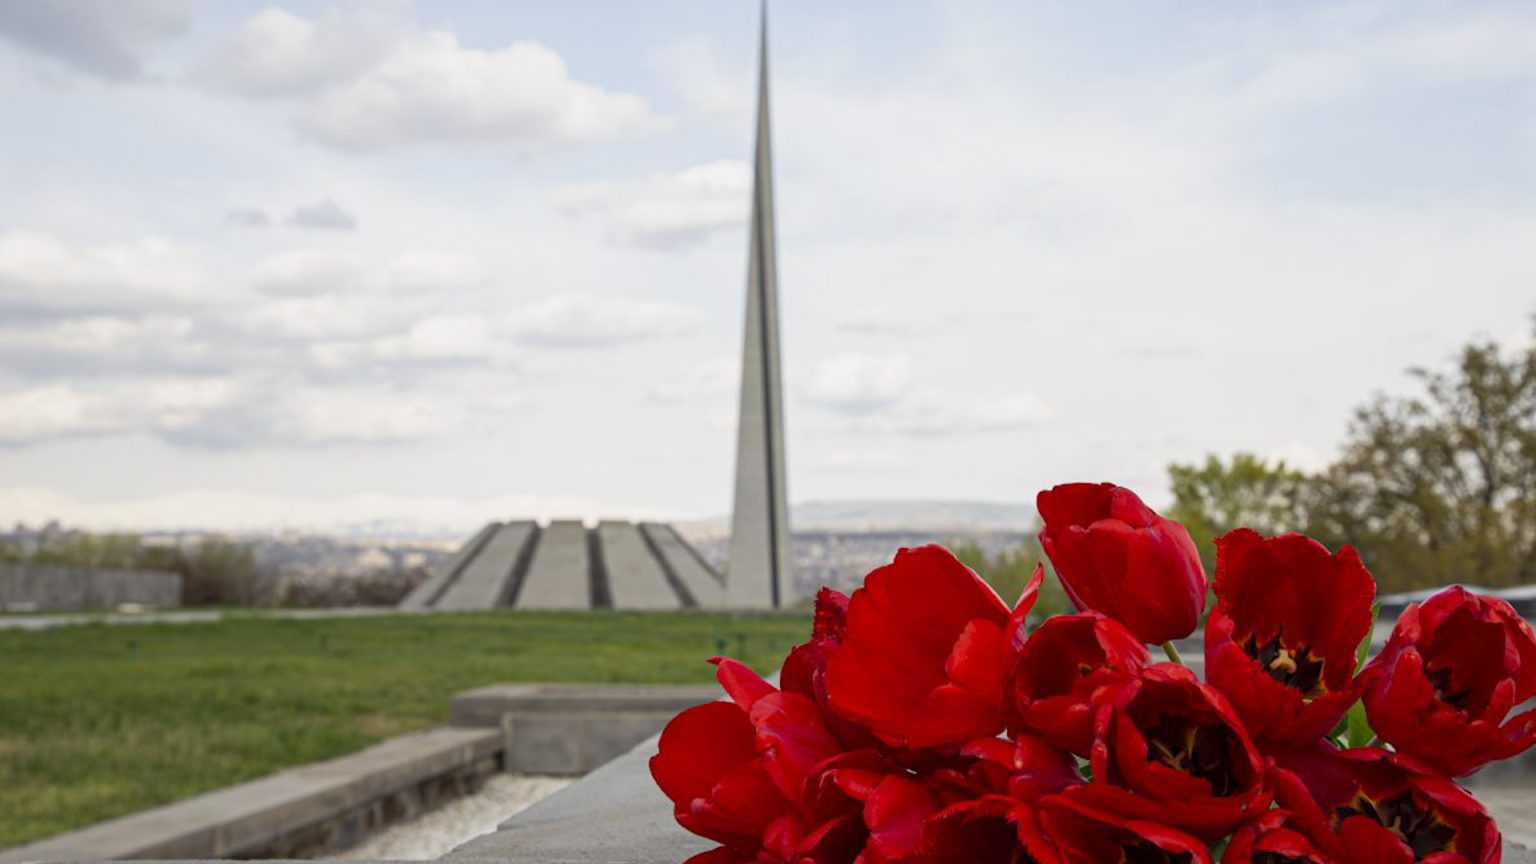 Այսօր Հայոց ցեղասպանության զոհերի հիշատակի օրն է